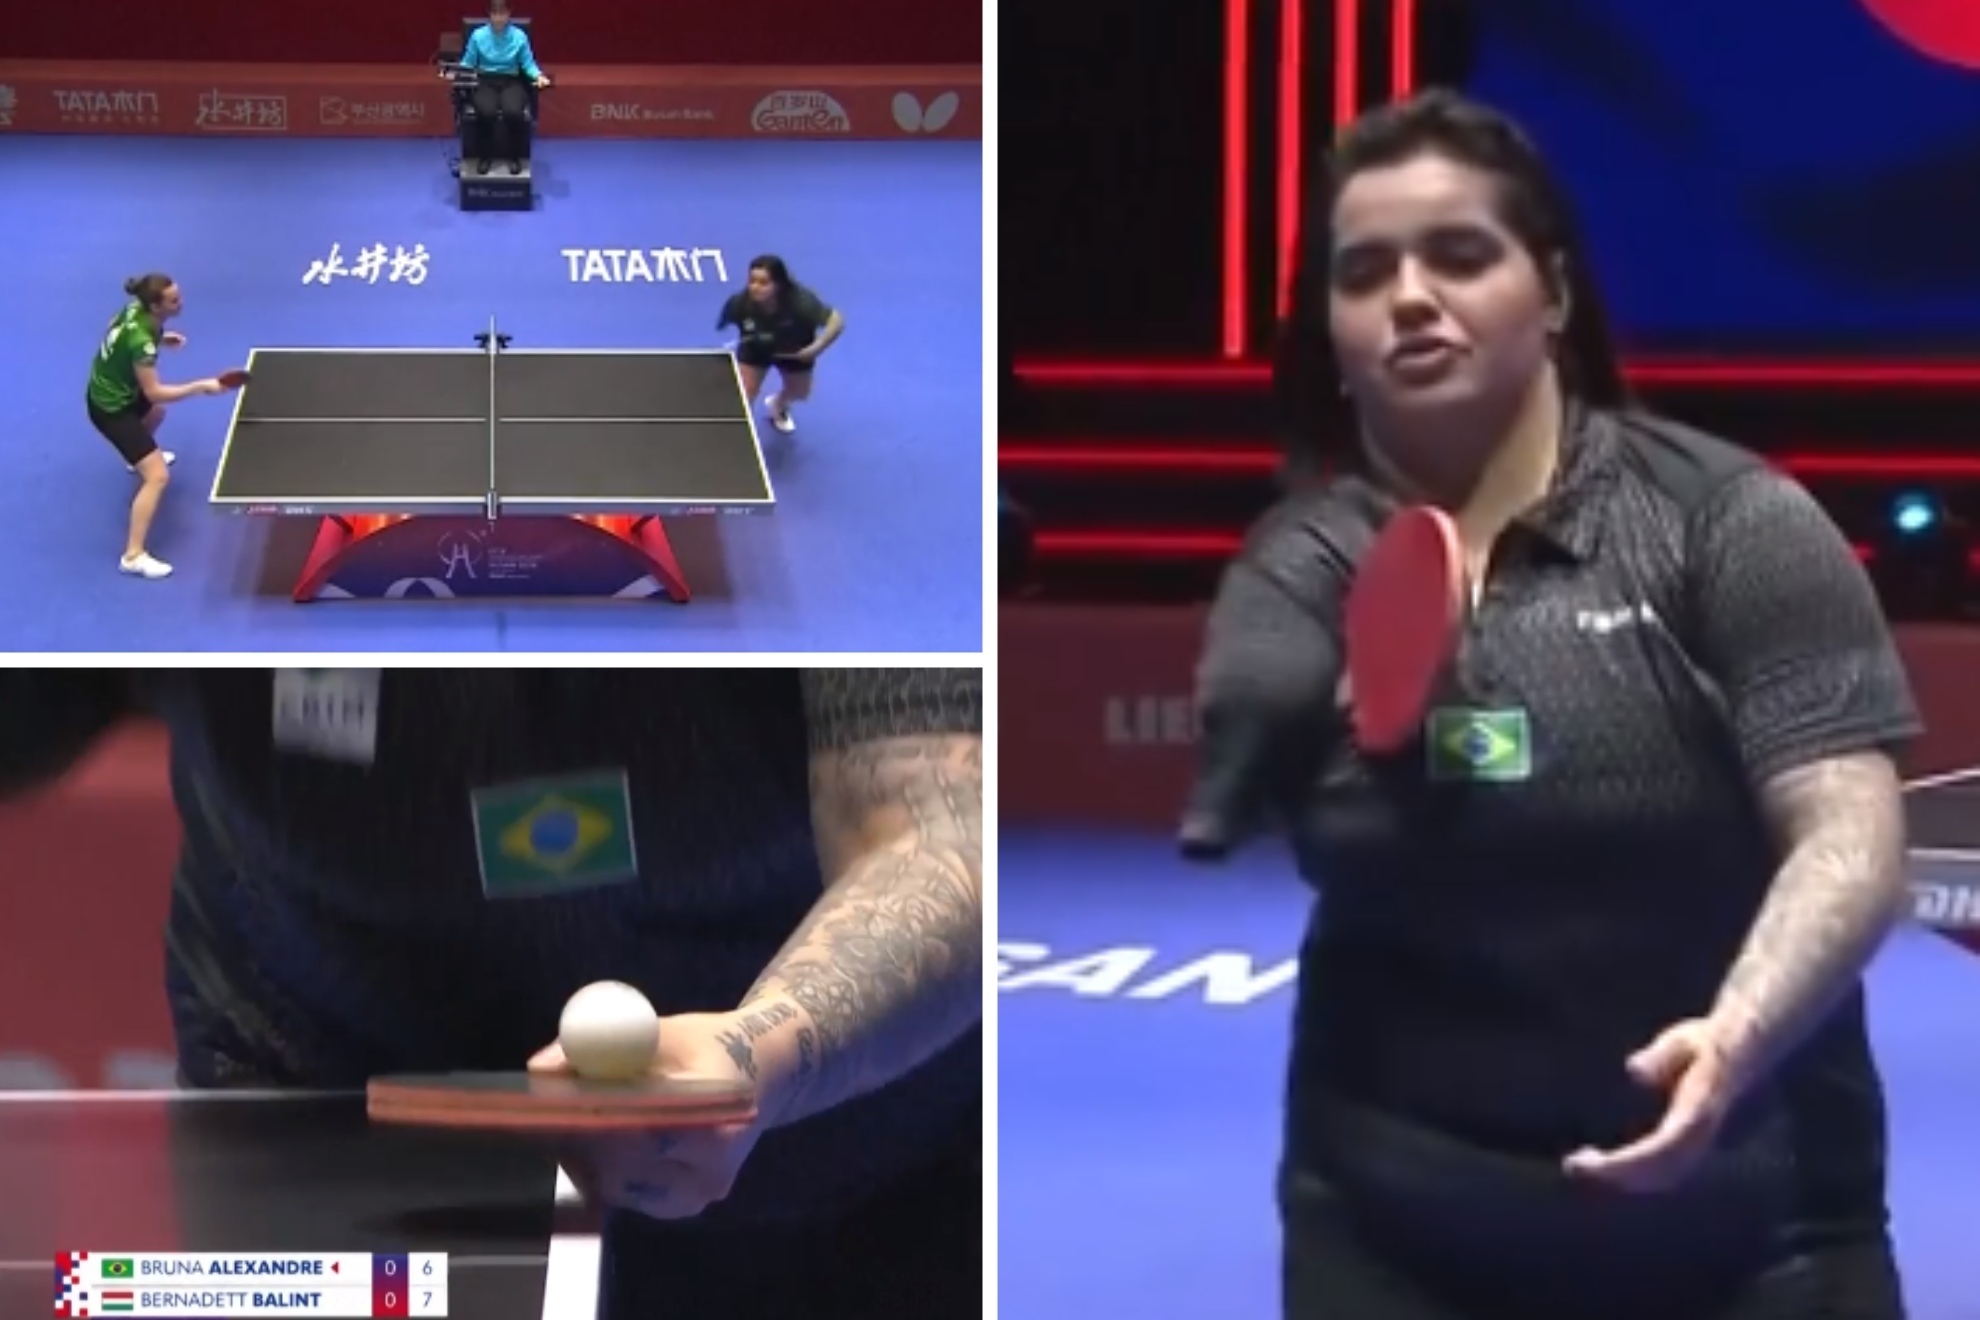 Bruna Alexandre hace historia en el tenis de mesa jugando (¡y ganando!) con un solo brazo